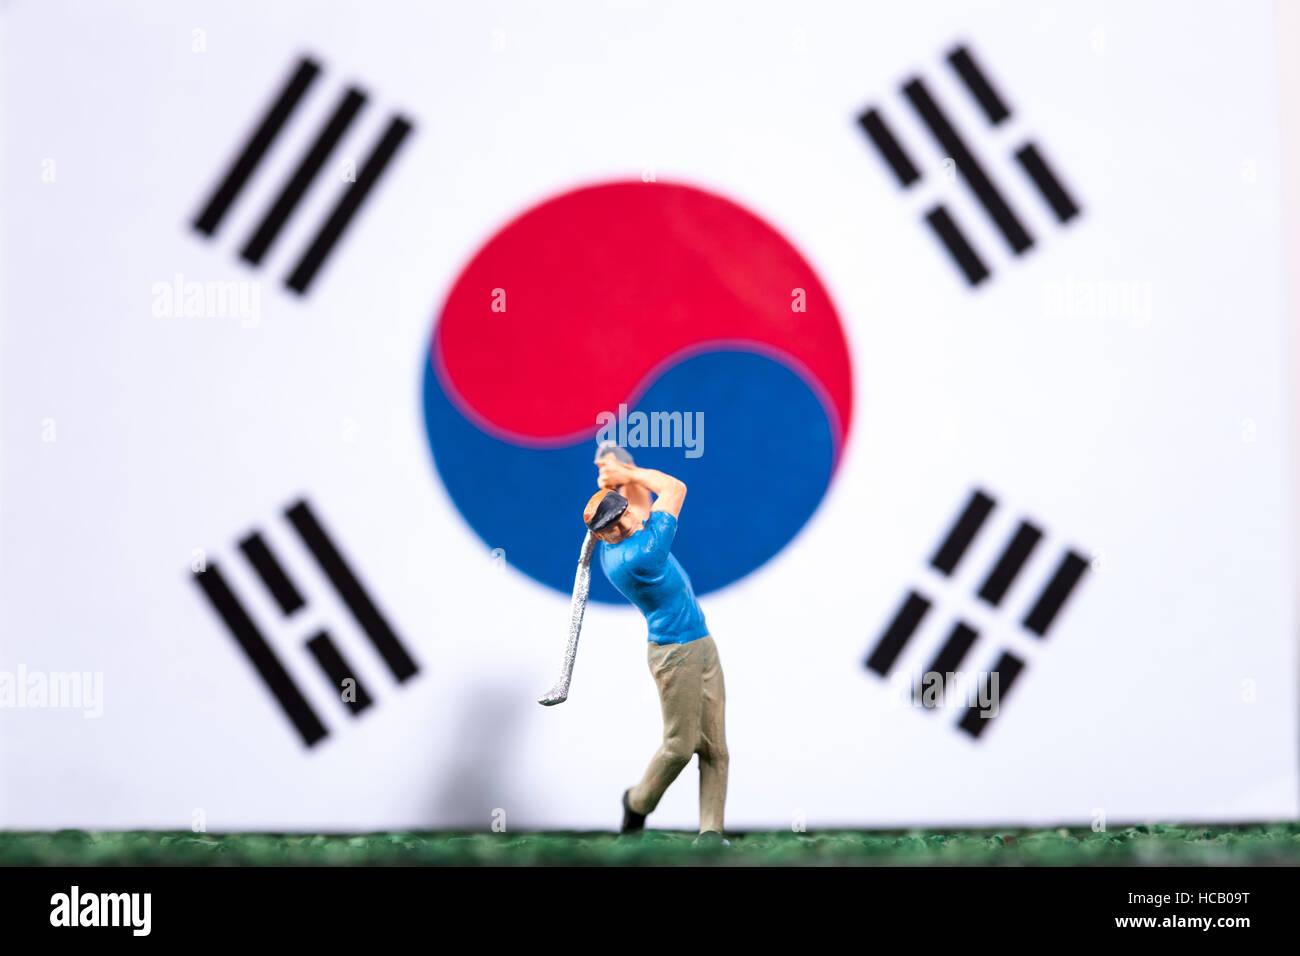 Abbildung der Golfspieler gegen koreanische Flagge Stockfoto